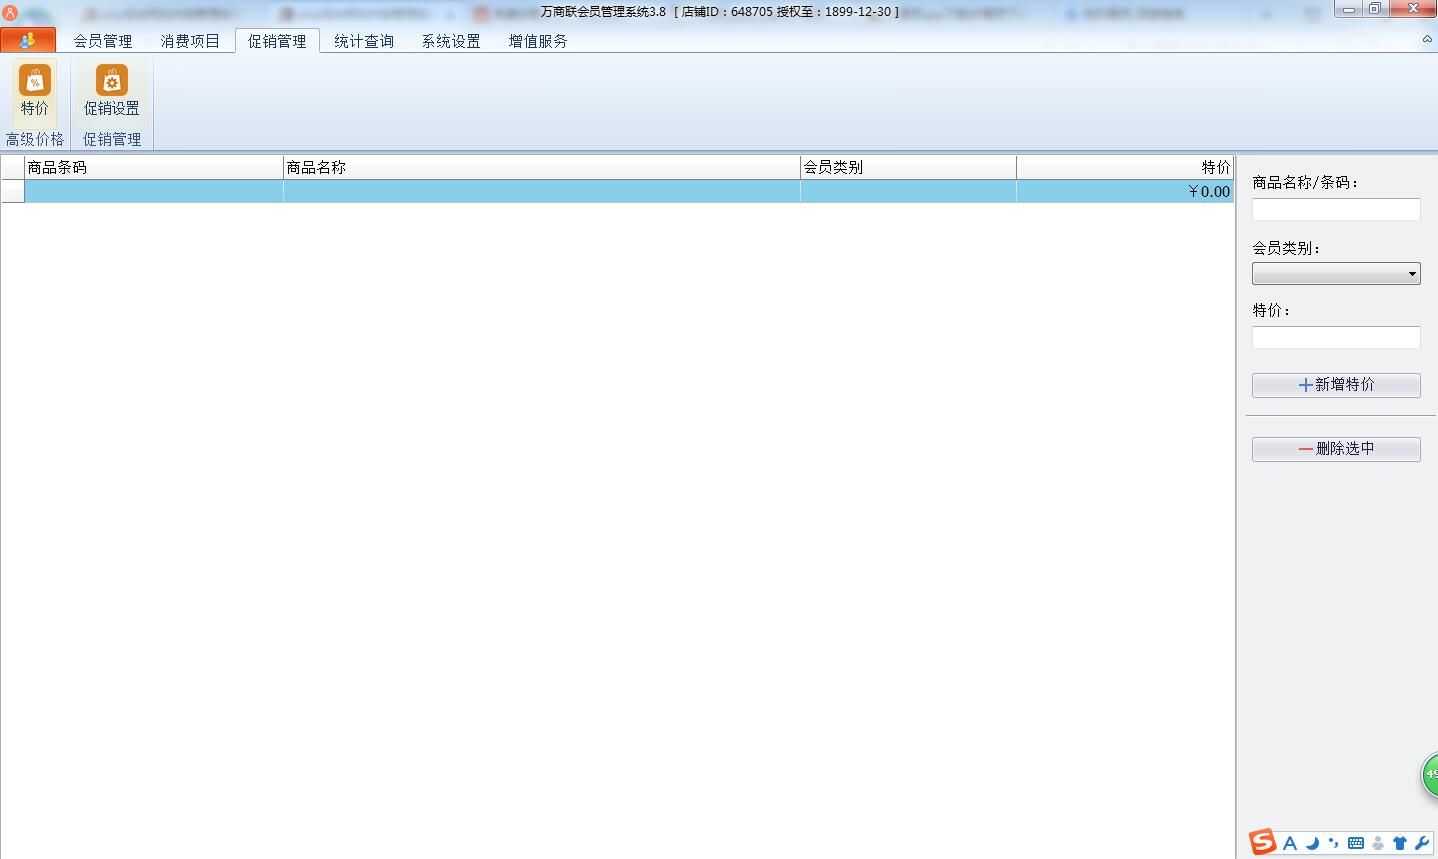 万商联店铺会员管理系统V3.8.0 中文安装版(附和谐补丁+安装破解教程)